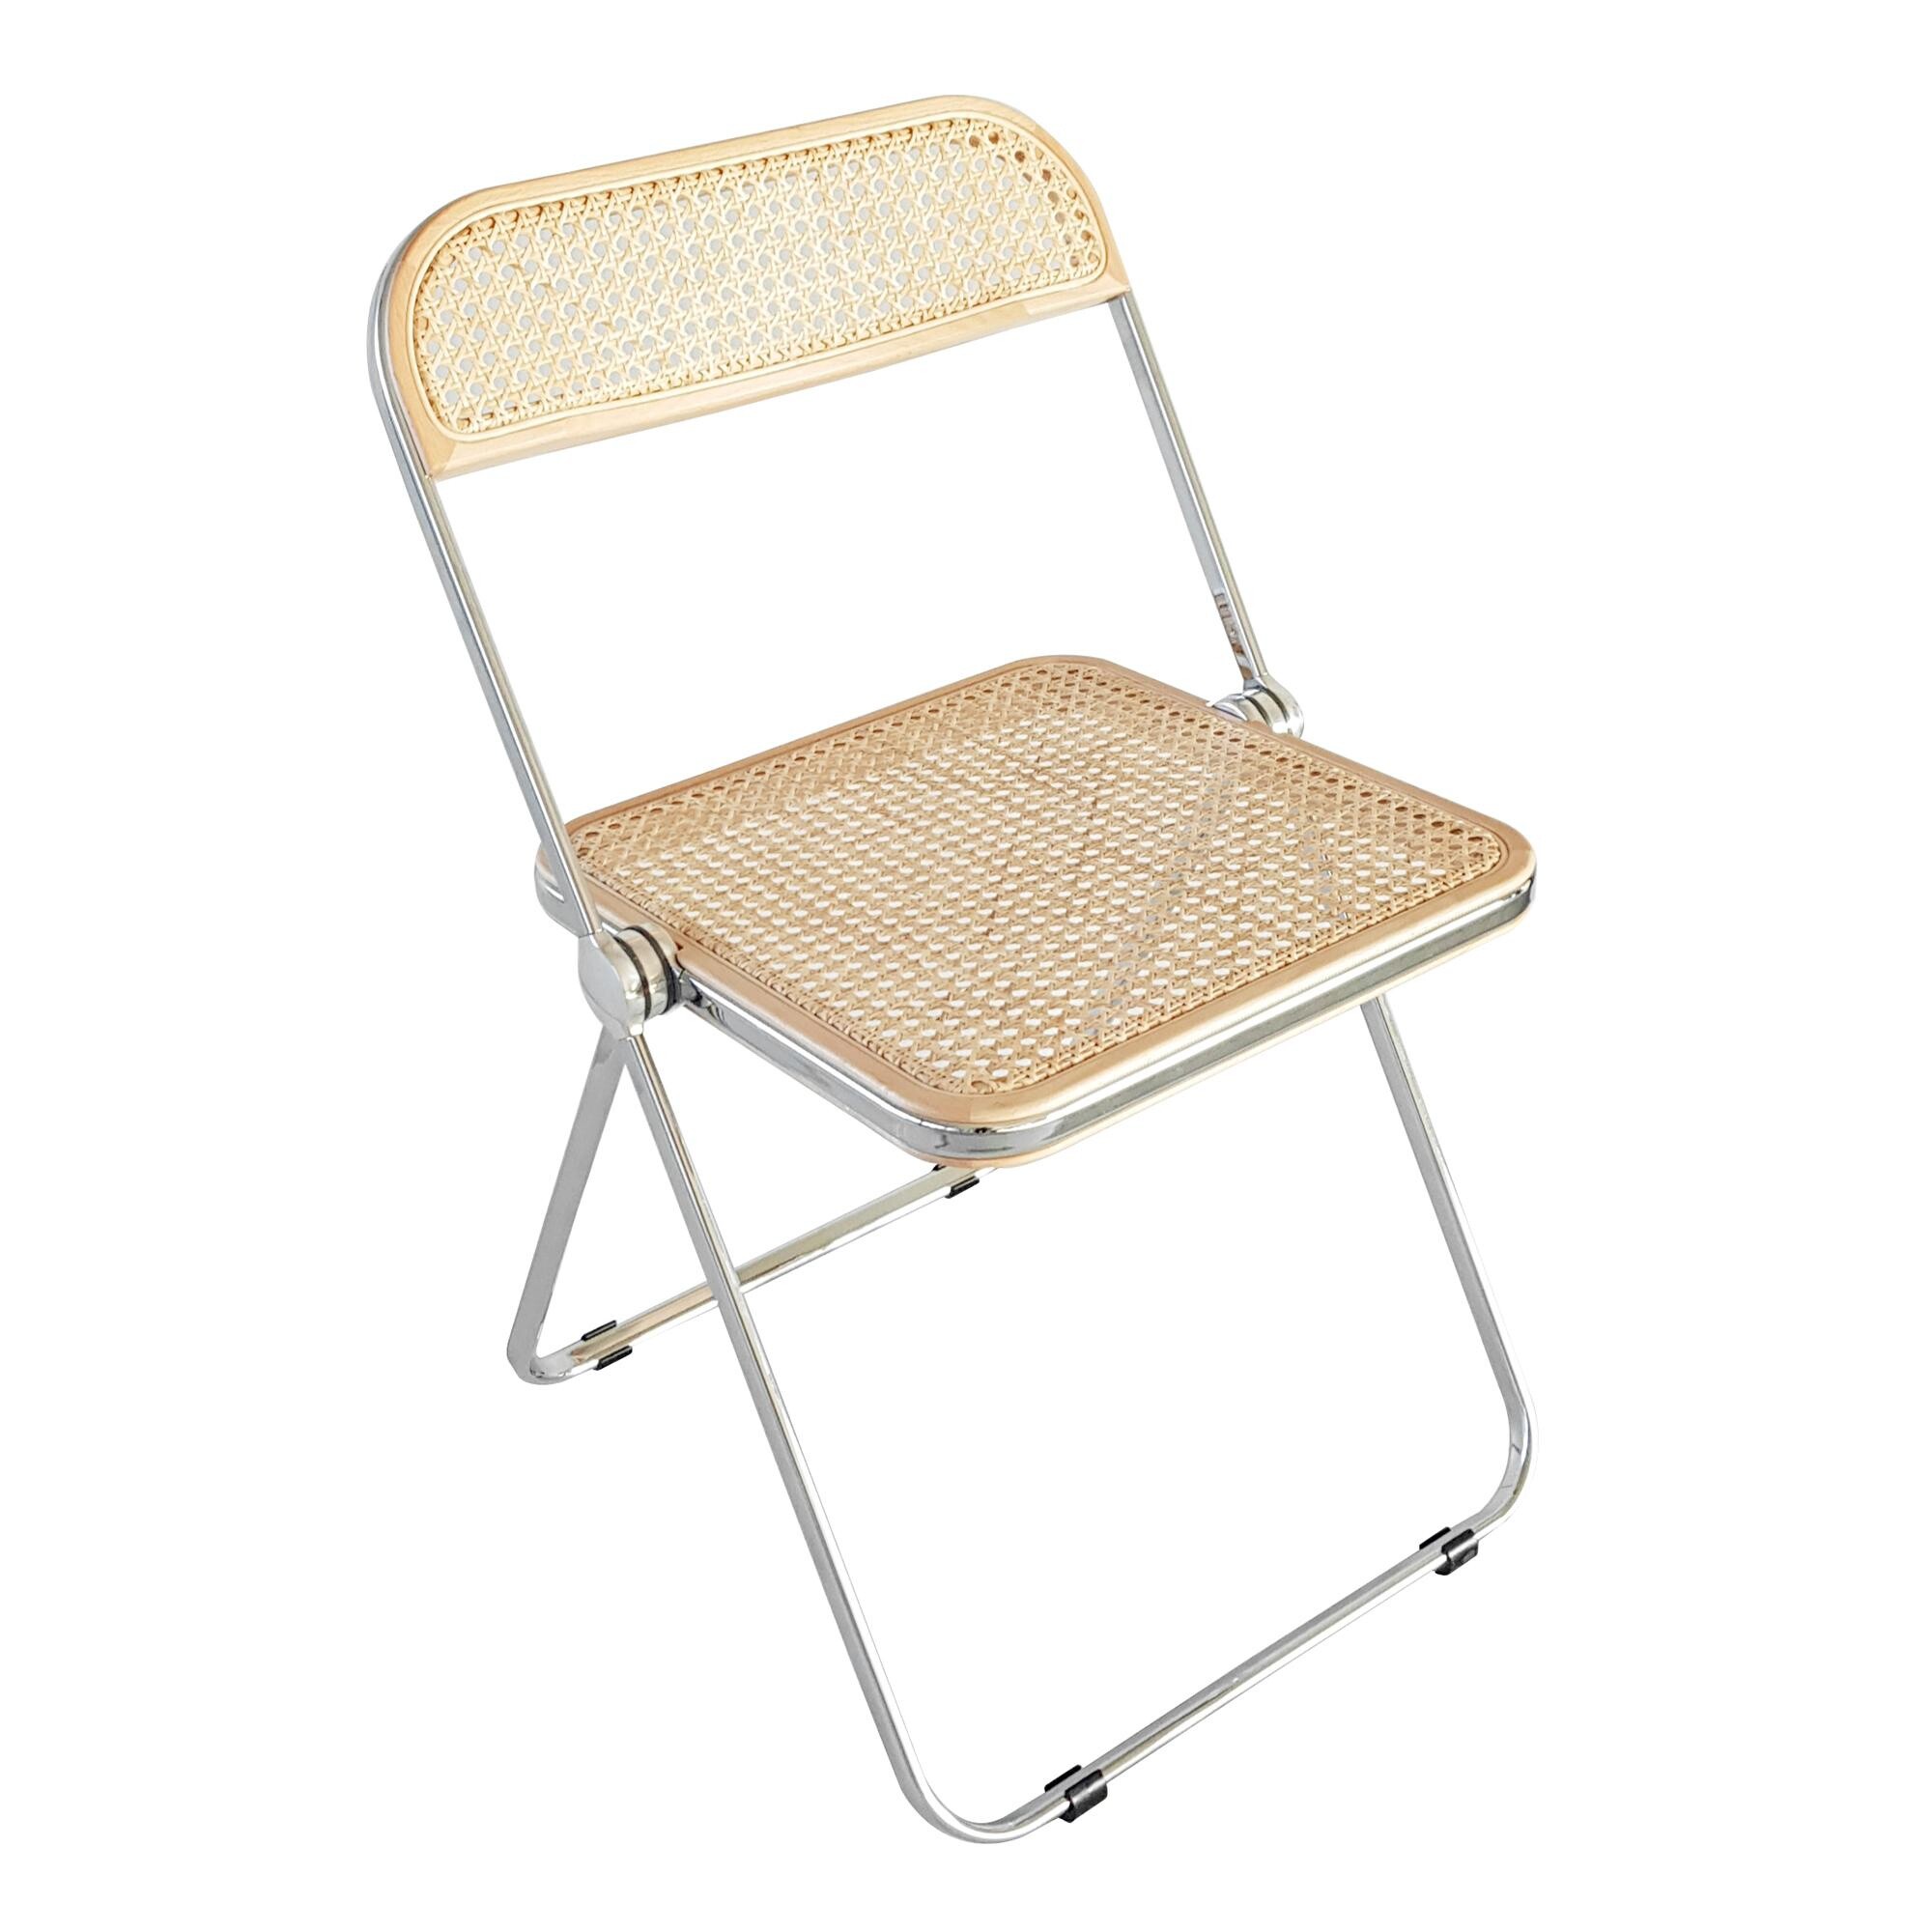 Plia Cane Folding Chair